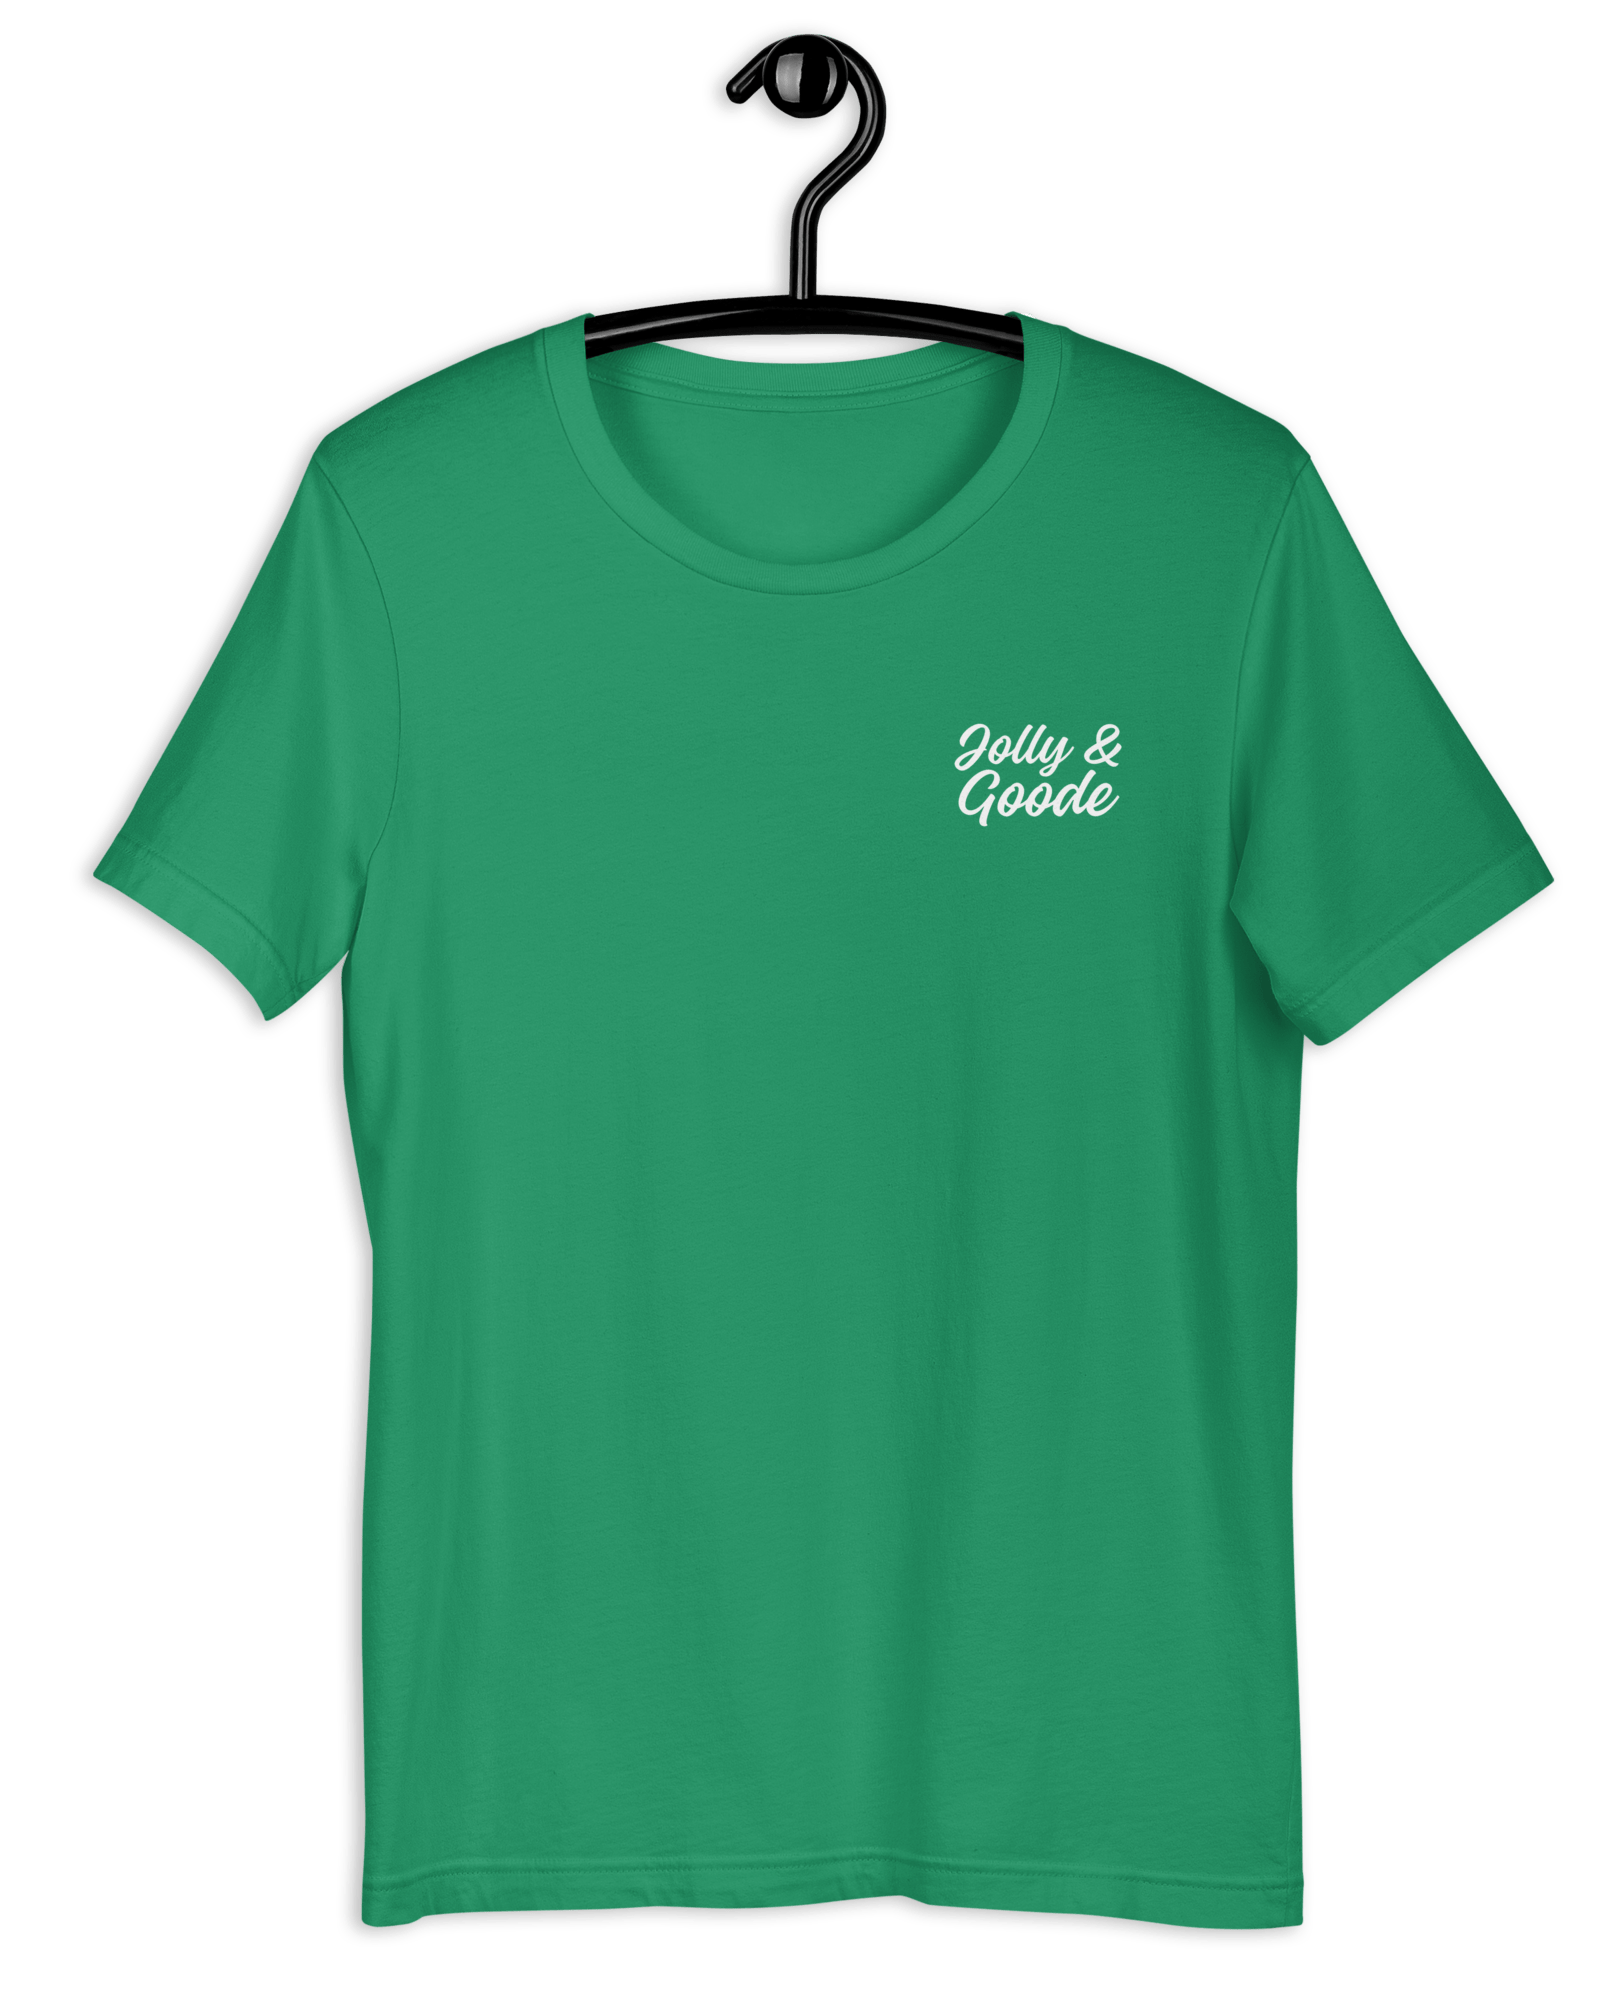 Jolly & Goode T-shirt | Handwritten Shirts & Tops Jolly & Goode